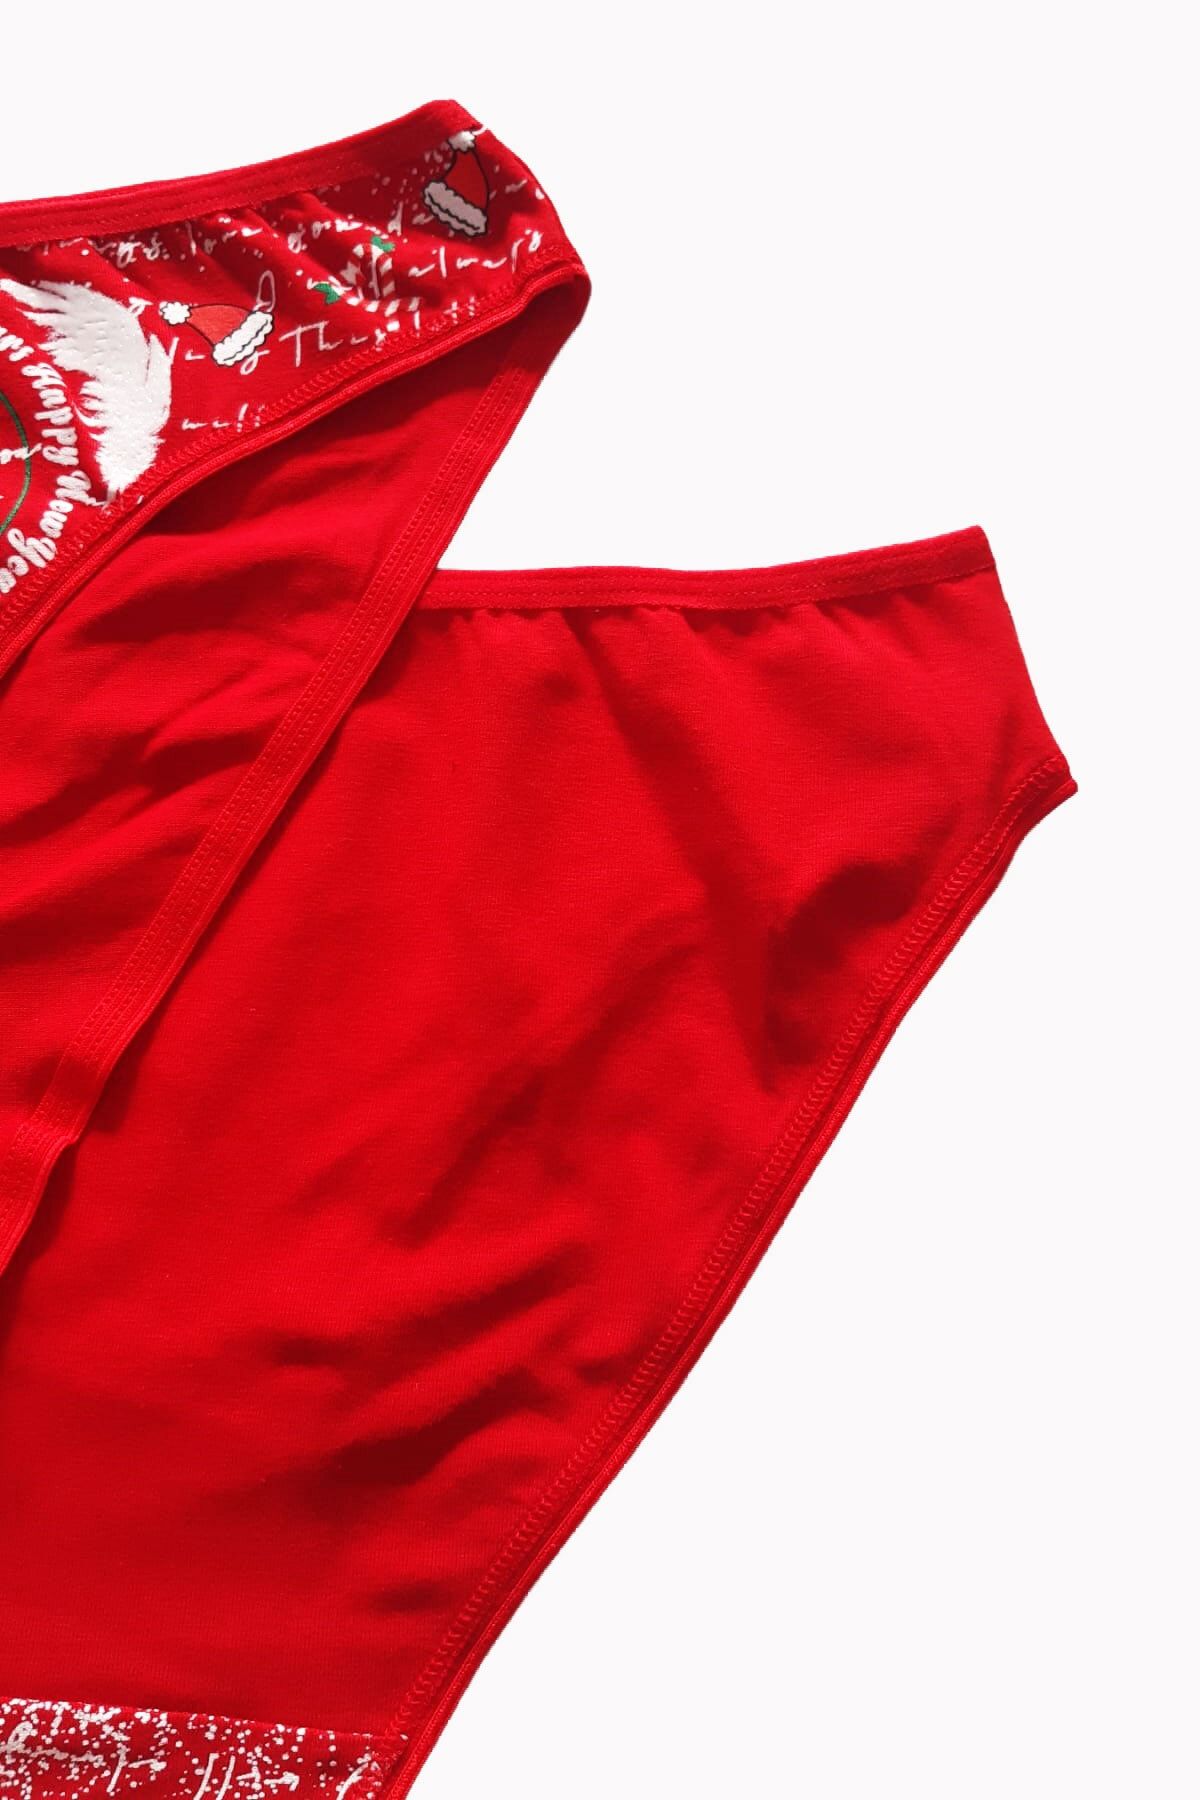 Hepsine Rakip Women's Red Bikini Cotton Stretchy New Year's Gift